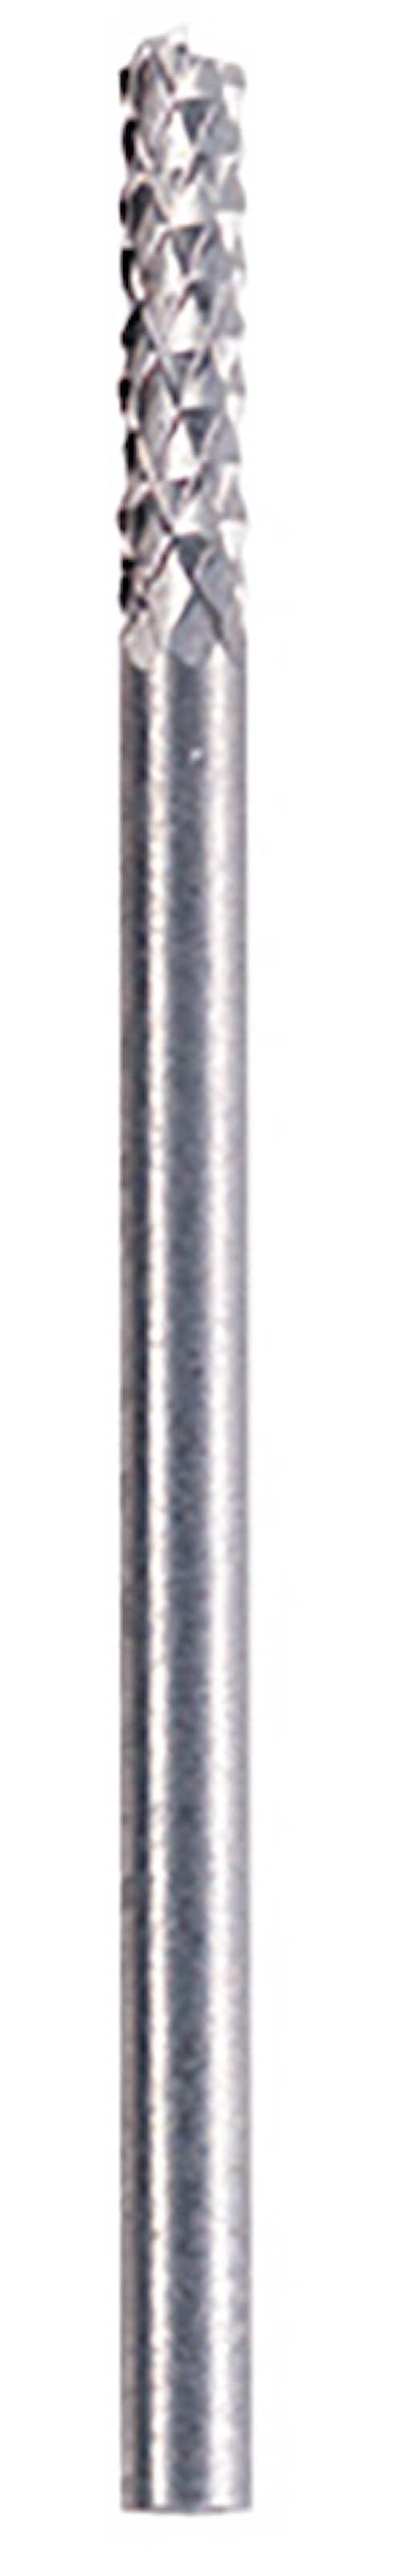 Dremel Fugefjerningsfres 3,2 mm (570)